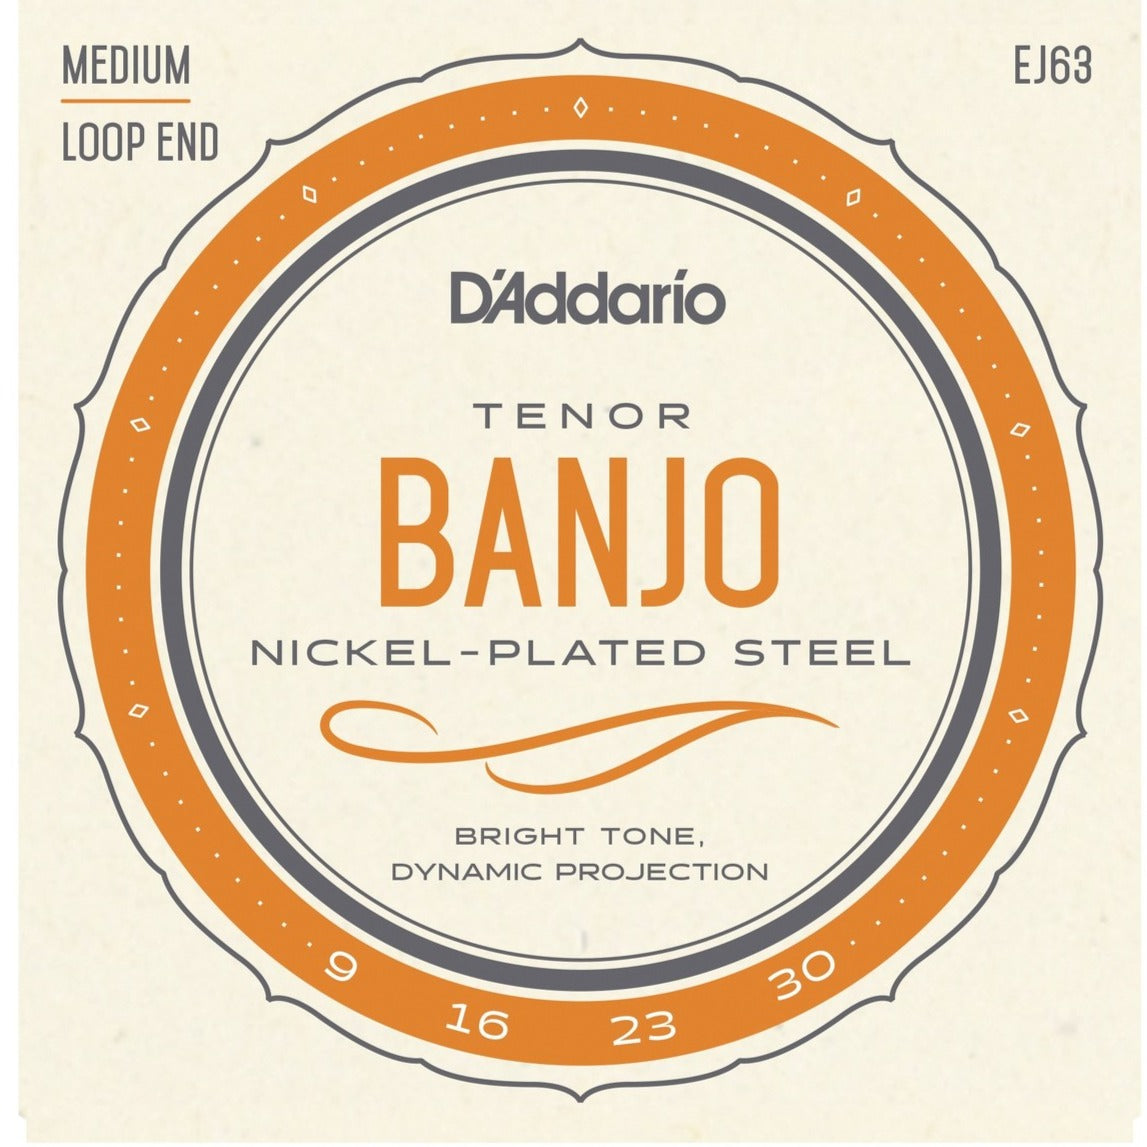 D Addario J63 Tenor Banjo Strings